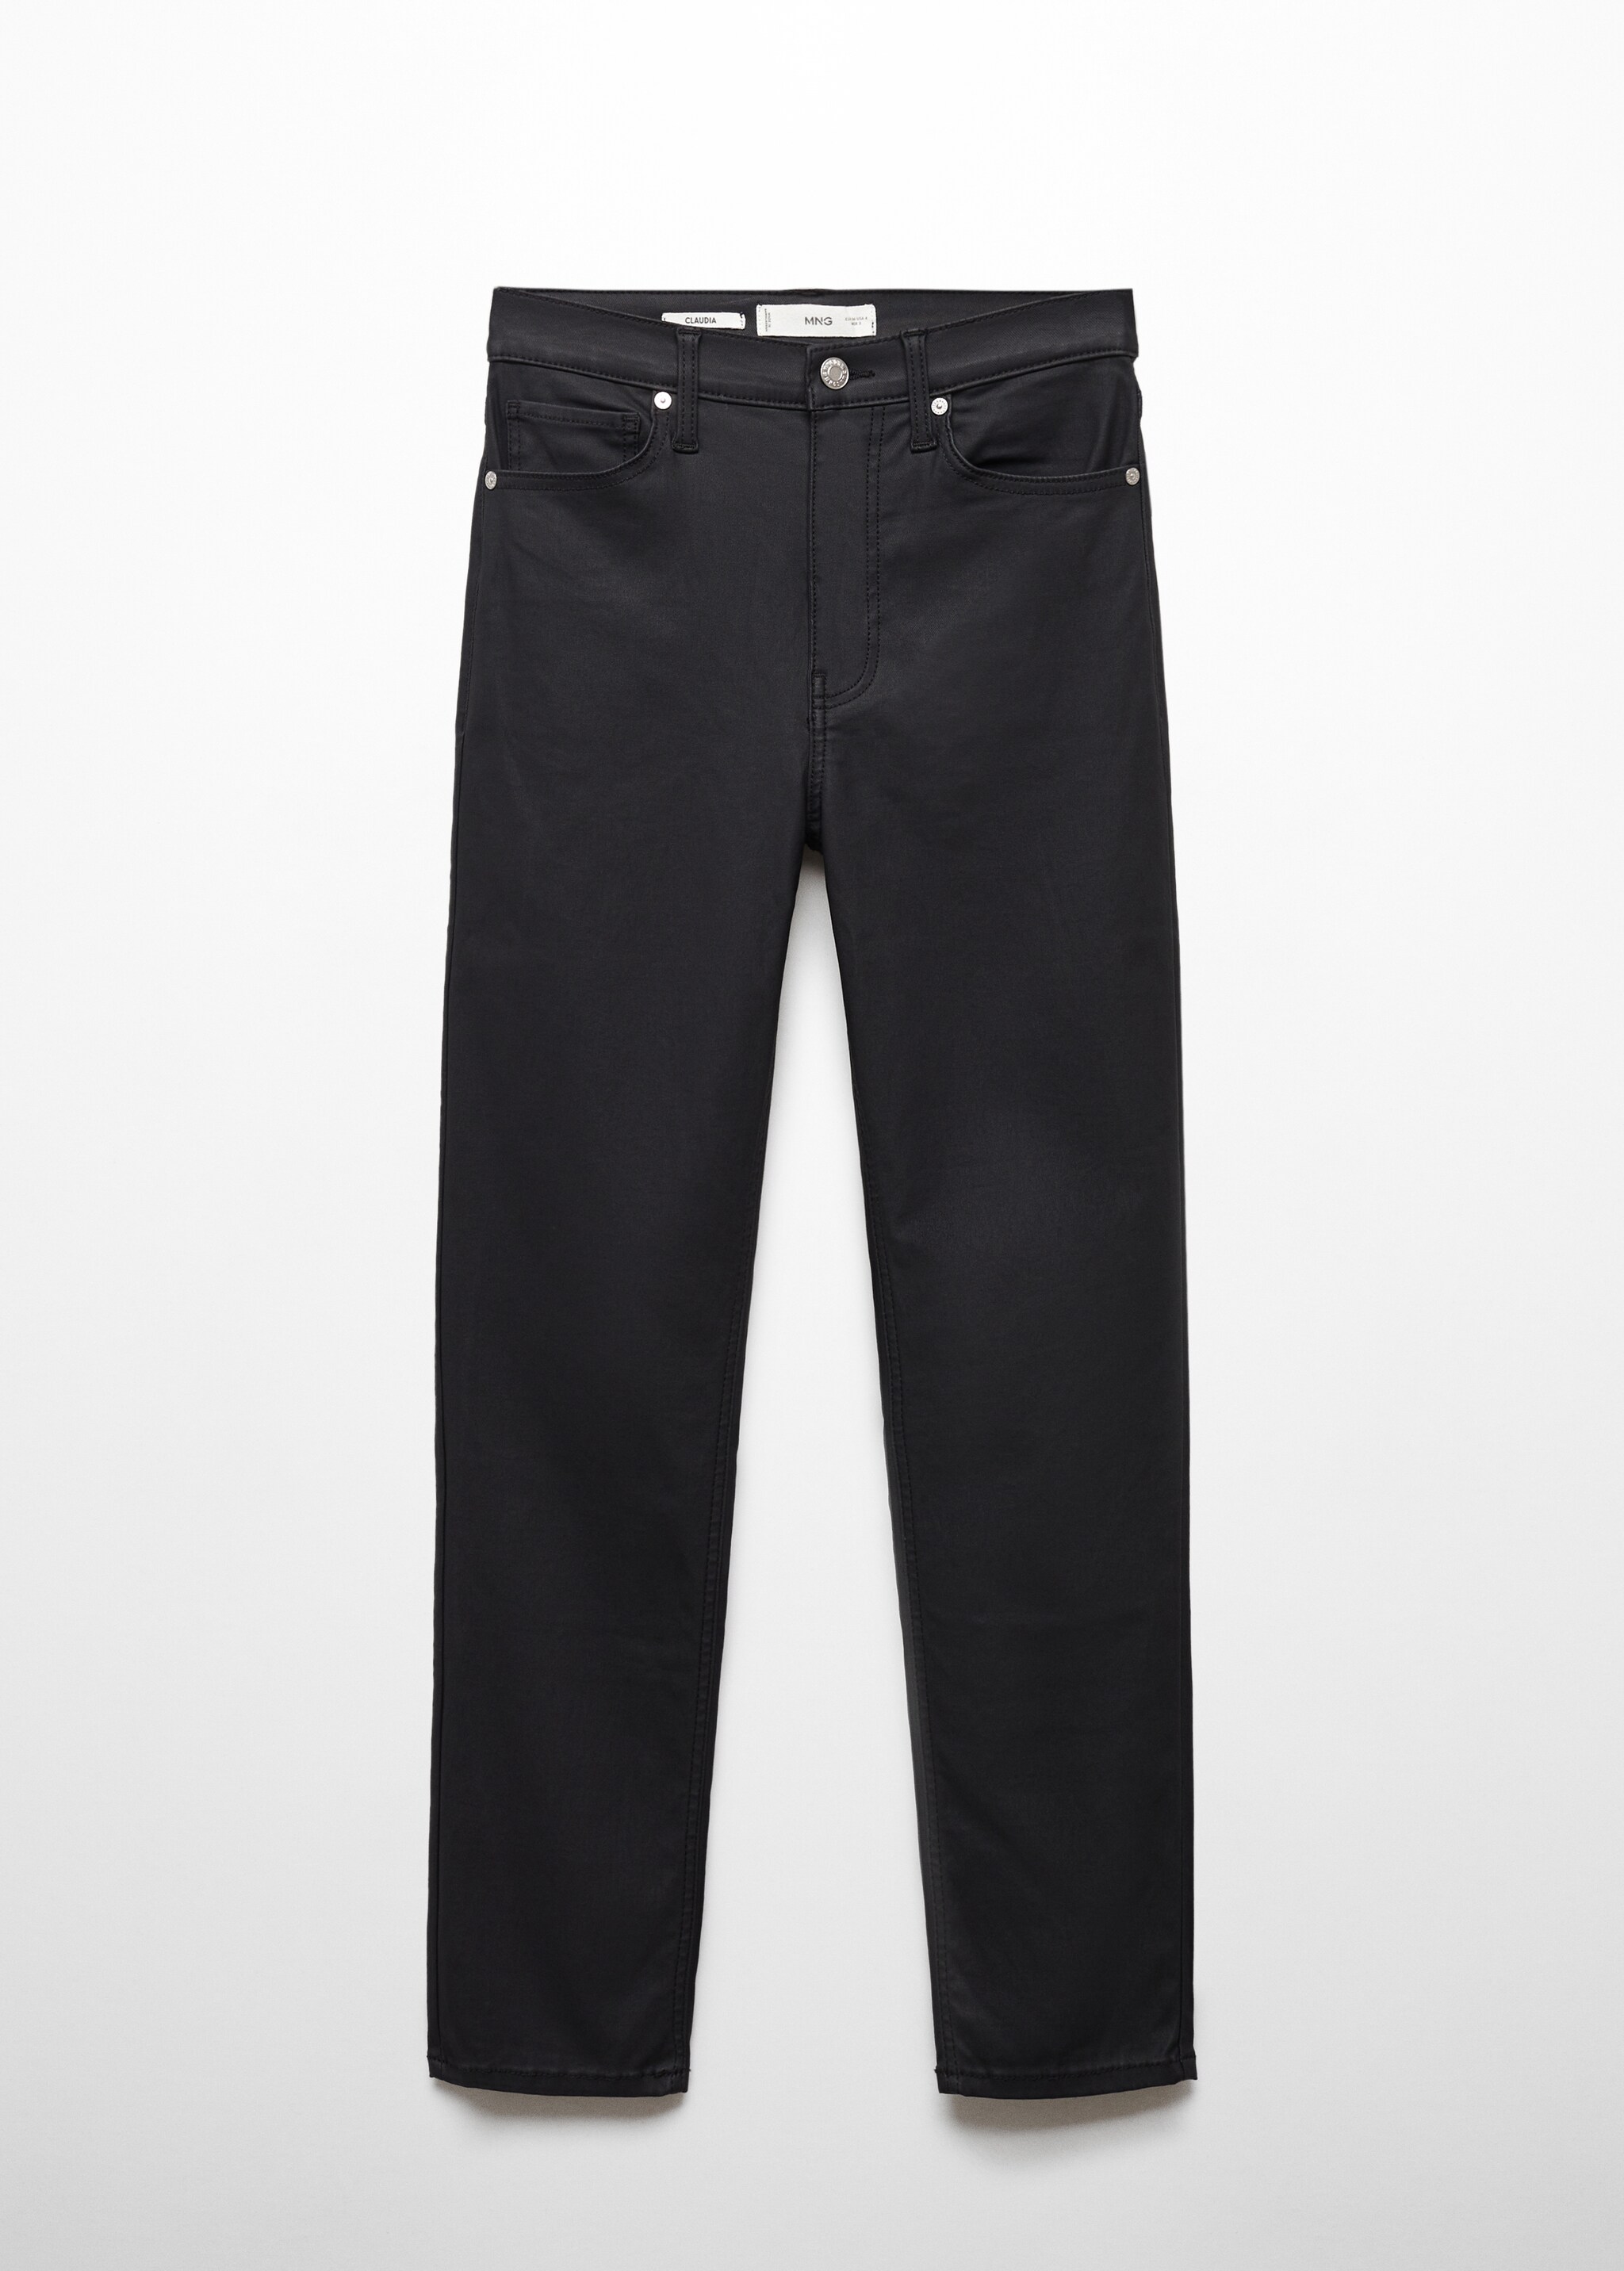 Вощеные укороченные джинсы slim - Изделие без модели